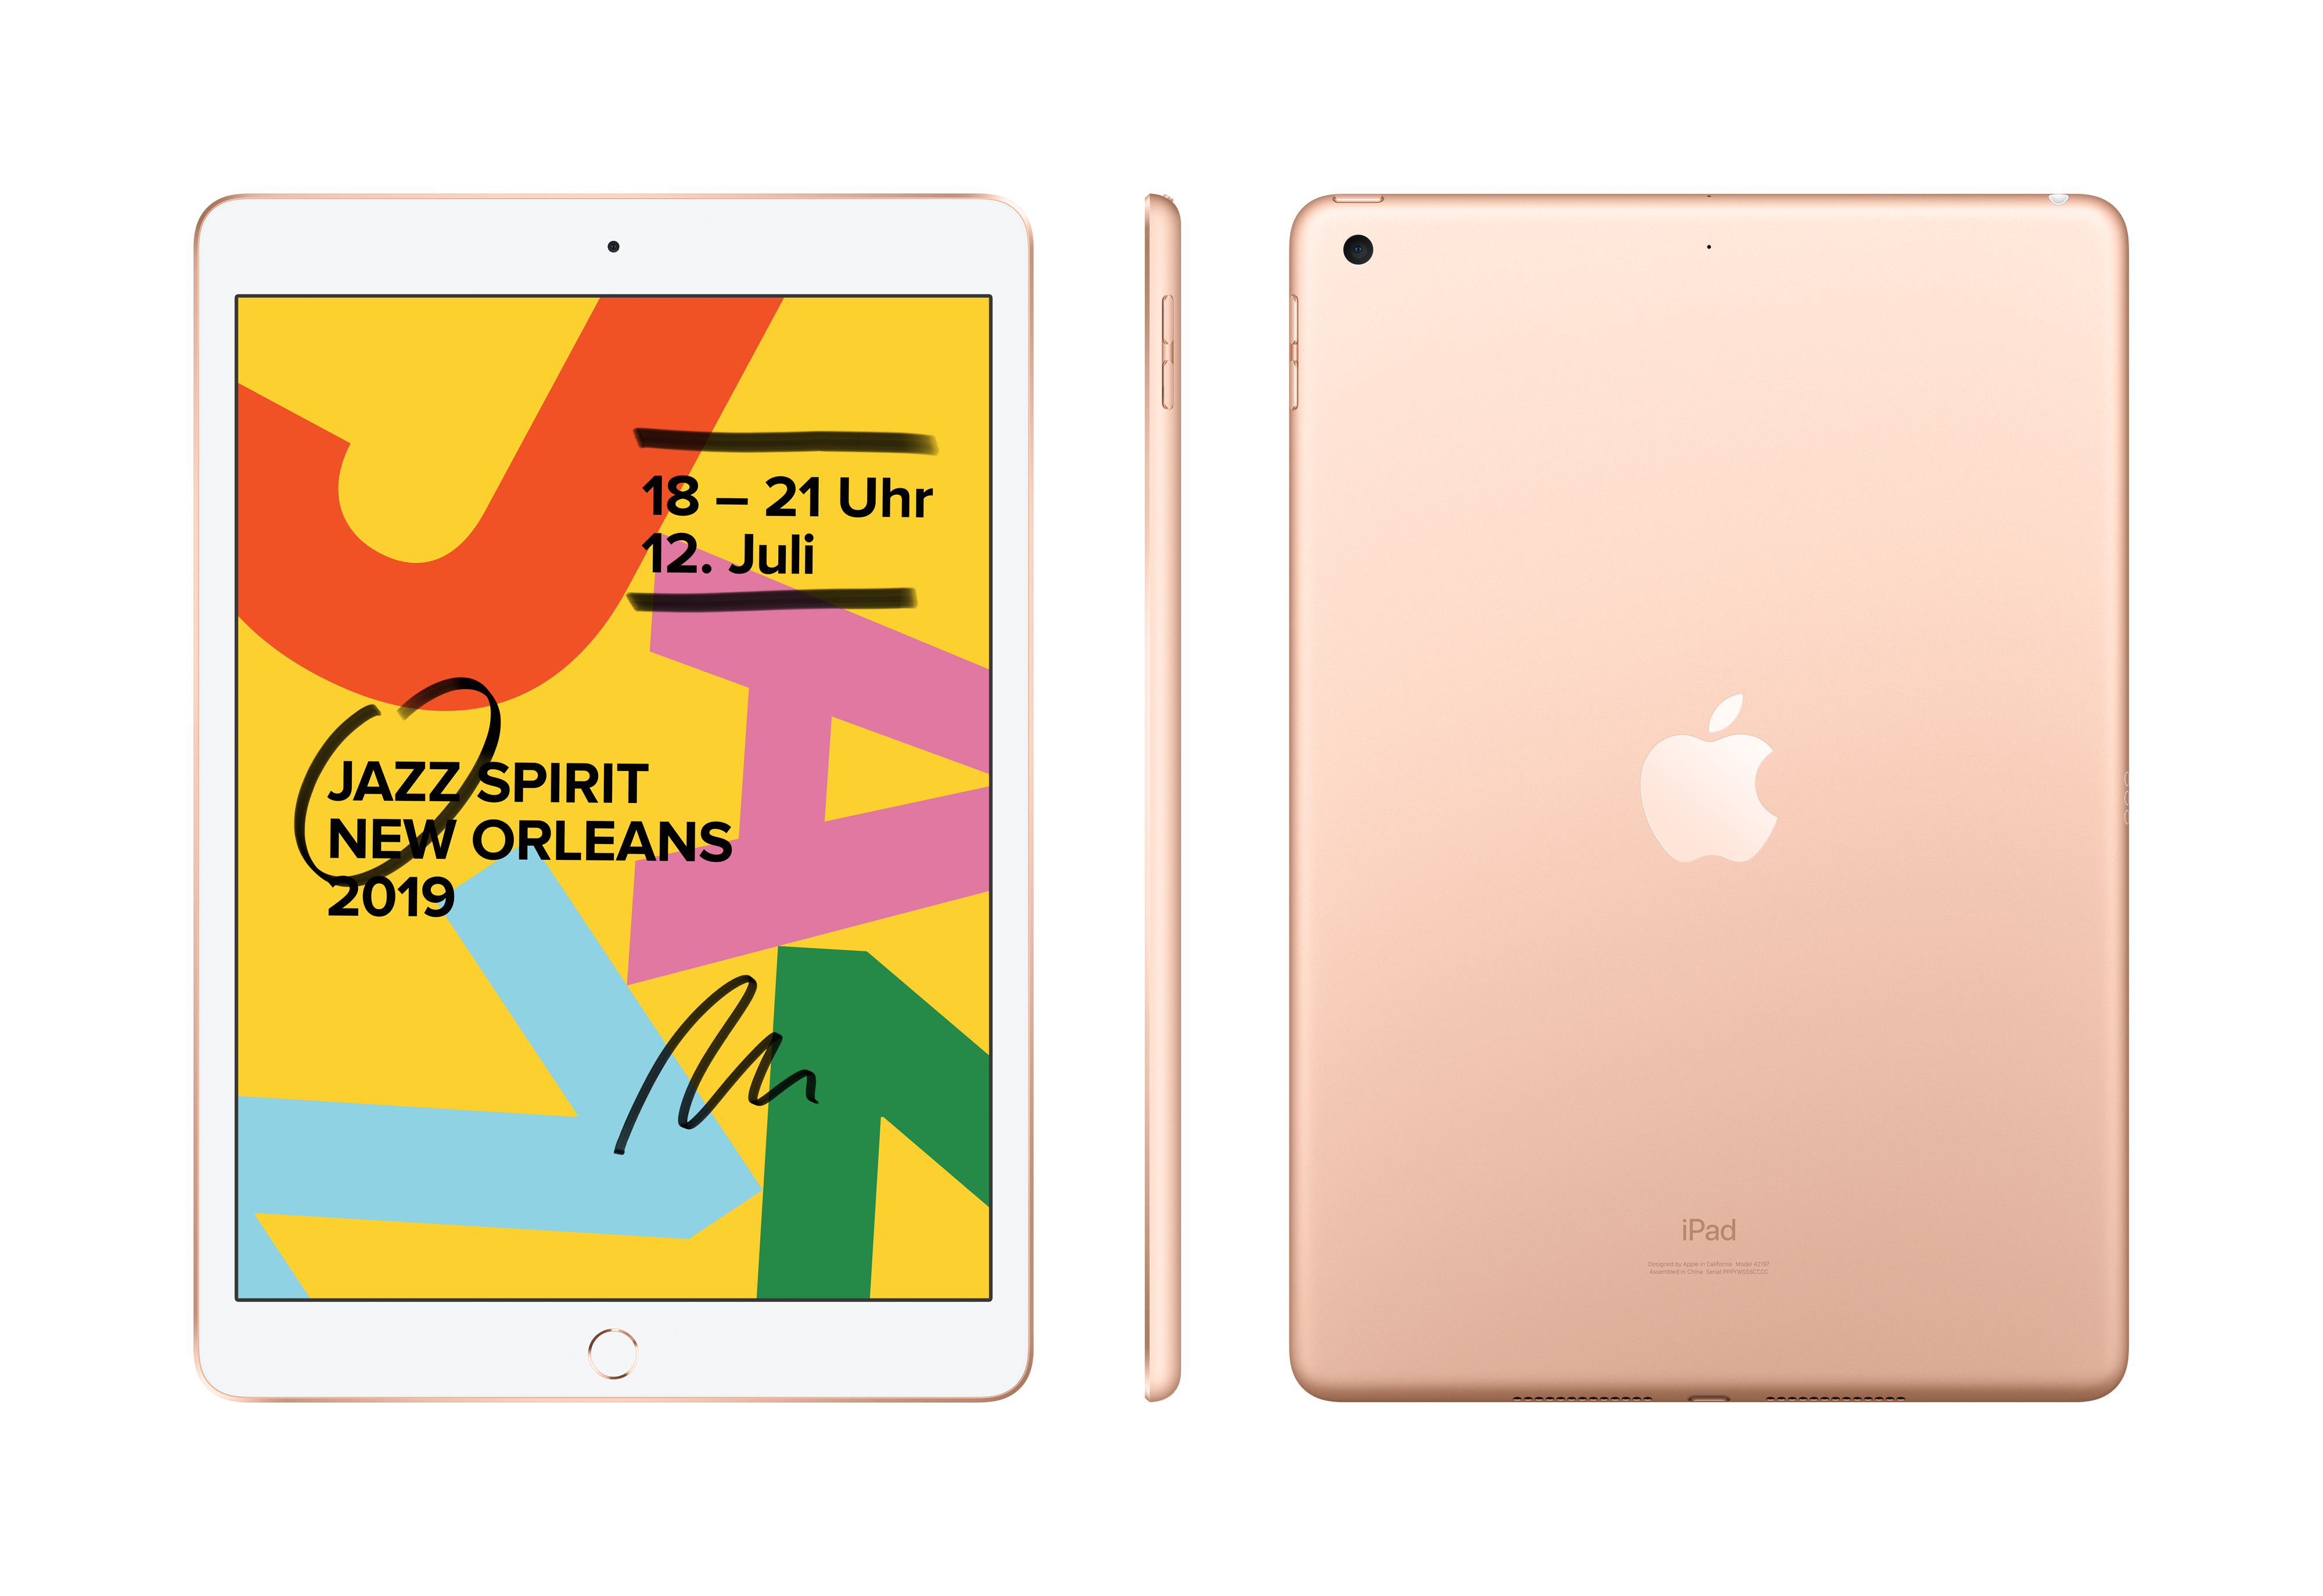 Apple iPad 10.2 (2019) WiFi 32GB Gold